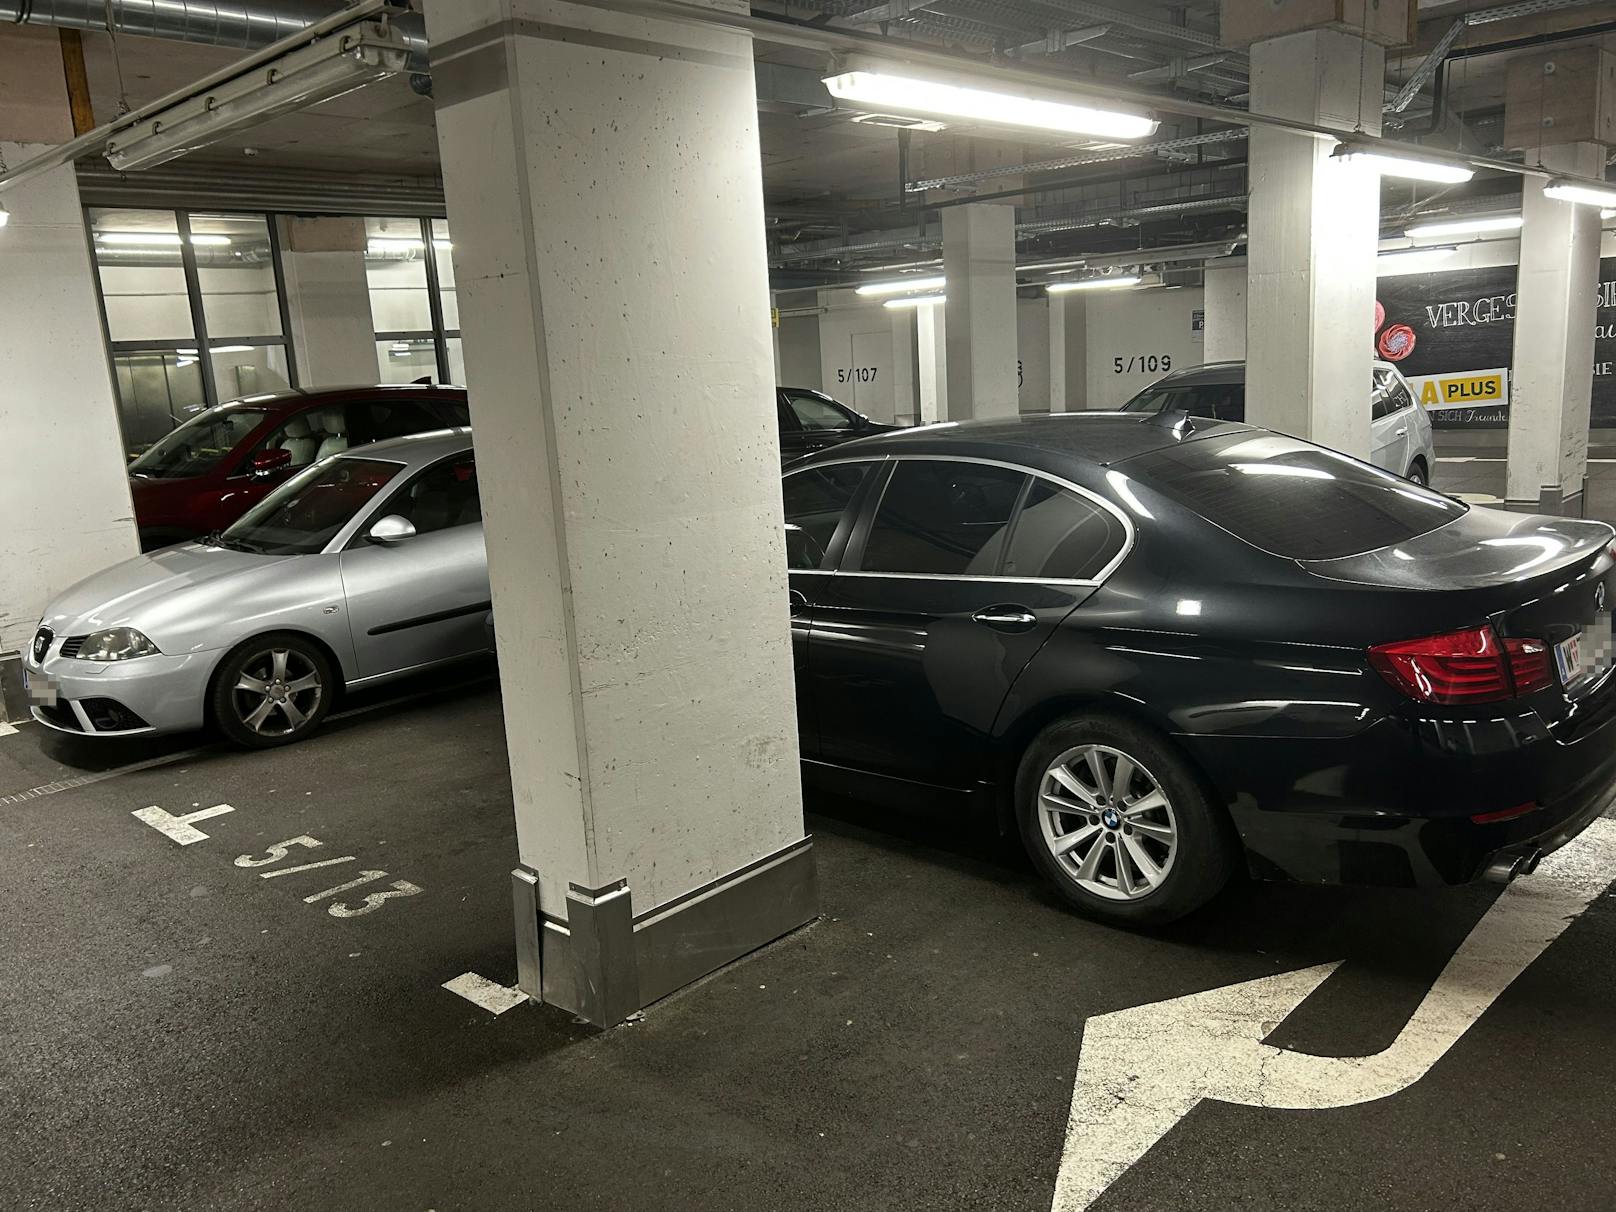 Warum der Lenker den Parkplatz nicht sah, bleibt unklar.